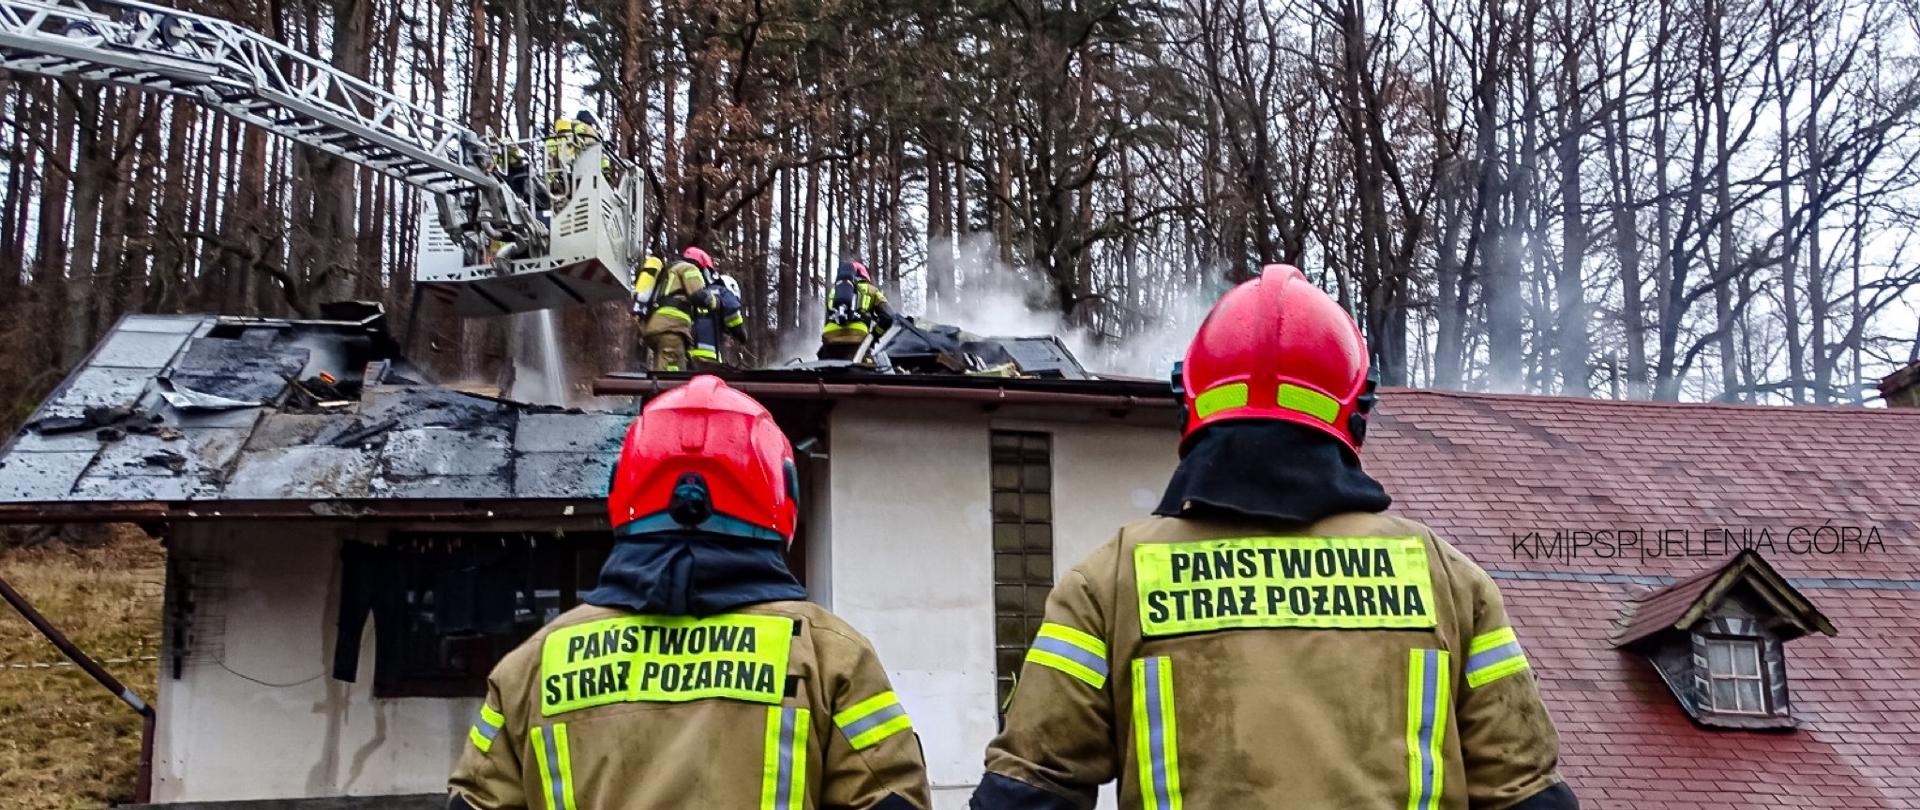 Na zdjęciu widać dwóch strażaków patrzących w kierunku budynku. Na dachu budynku widać strażaków oraz ulatniający się dym. Zdjęcie wykonane w dzień. Strażacy są w musztardowych mundurach. 